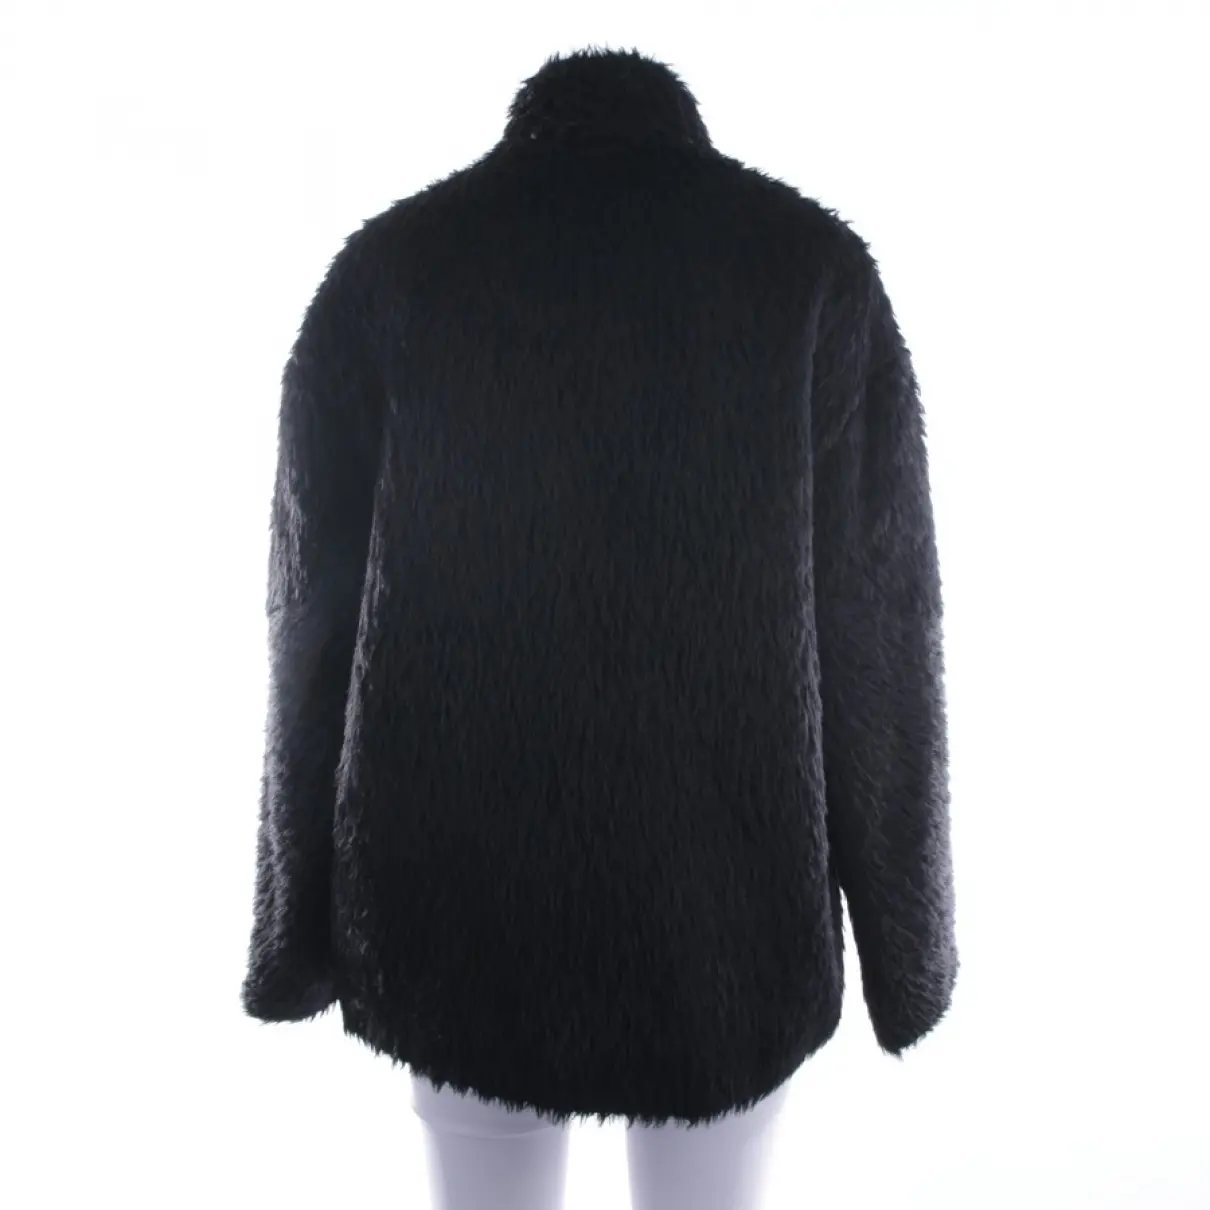 Buy Dorothee Schumacher Wool jacket online